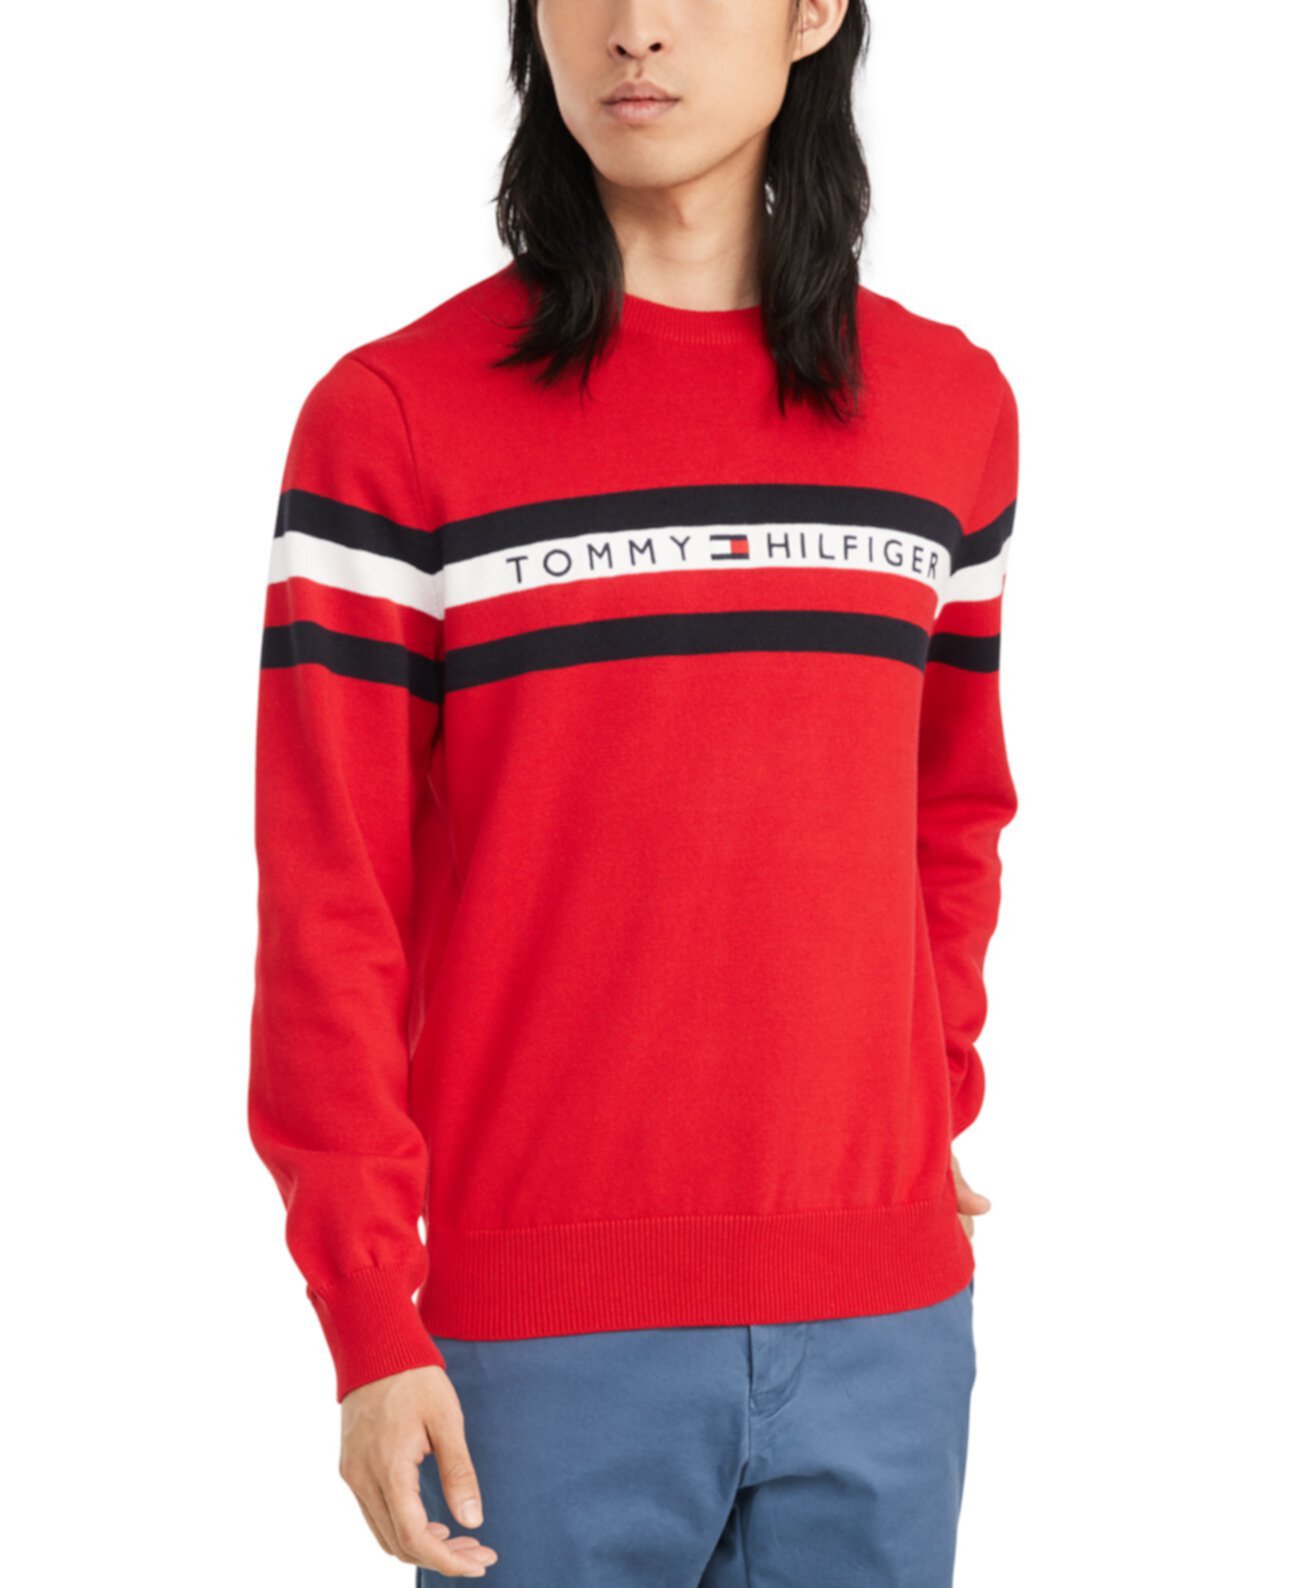 Мужской свитер с вышивкой в полоску и логотипом Regular Tommy Hilfiger